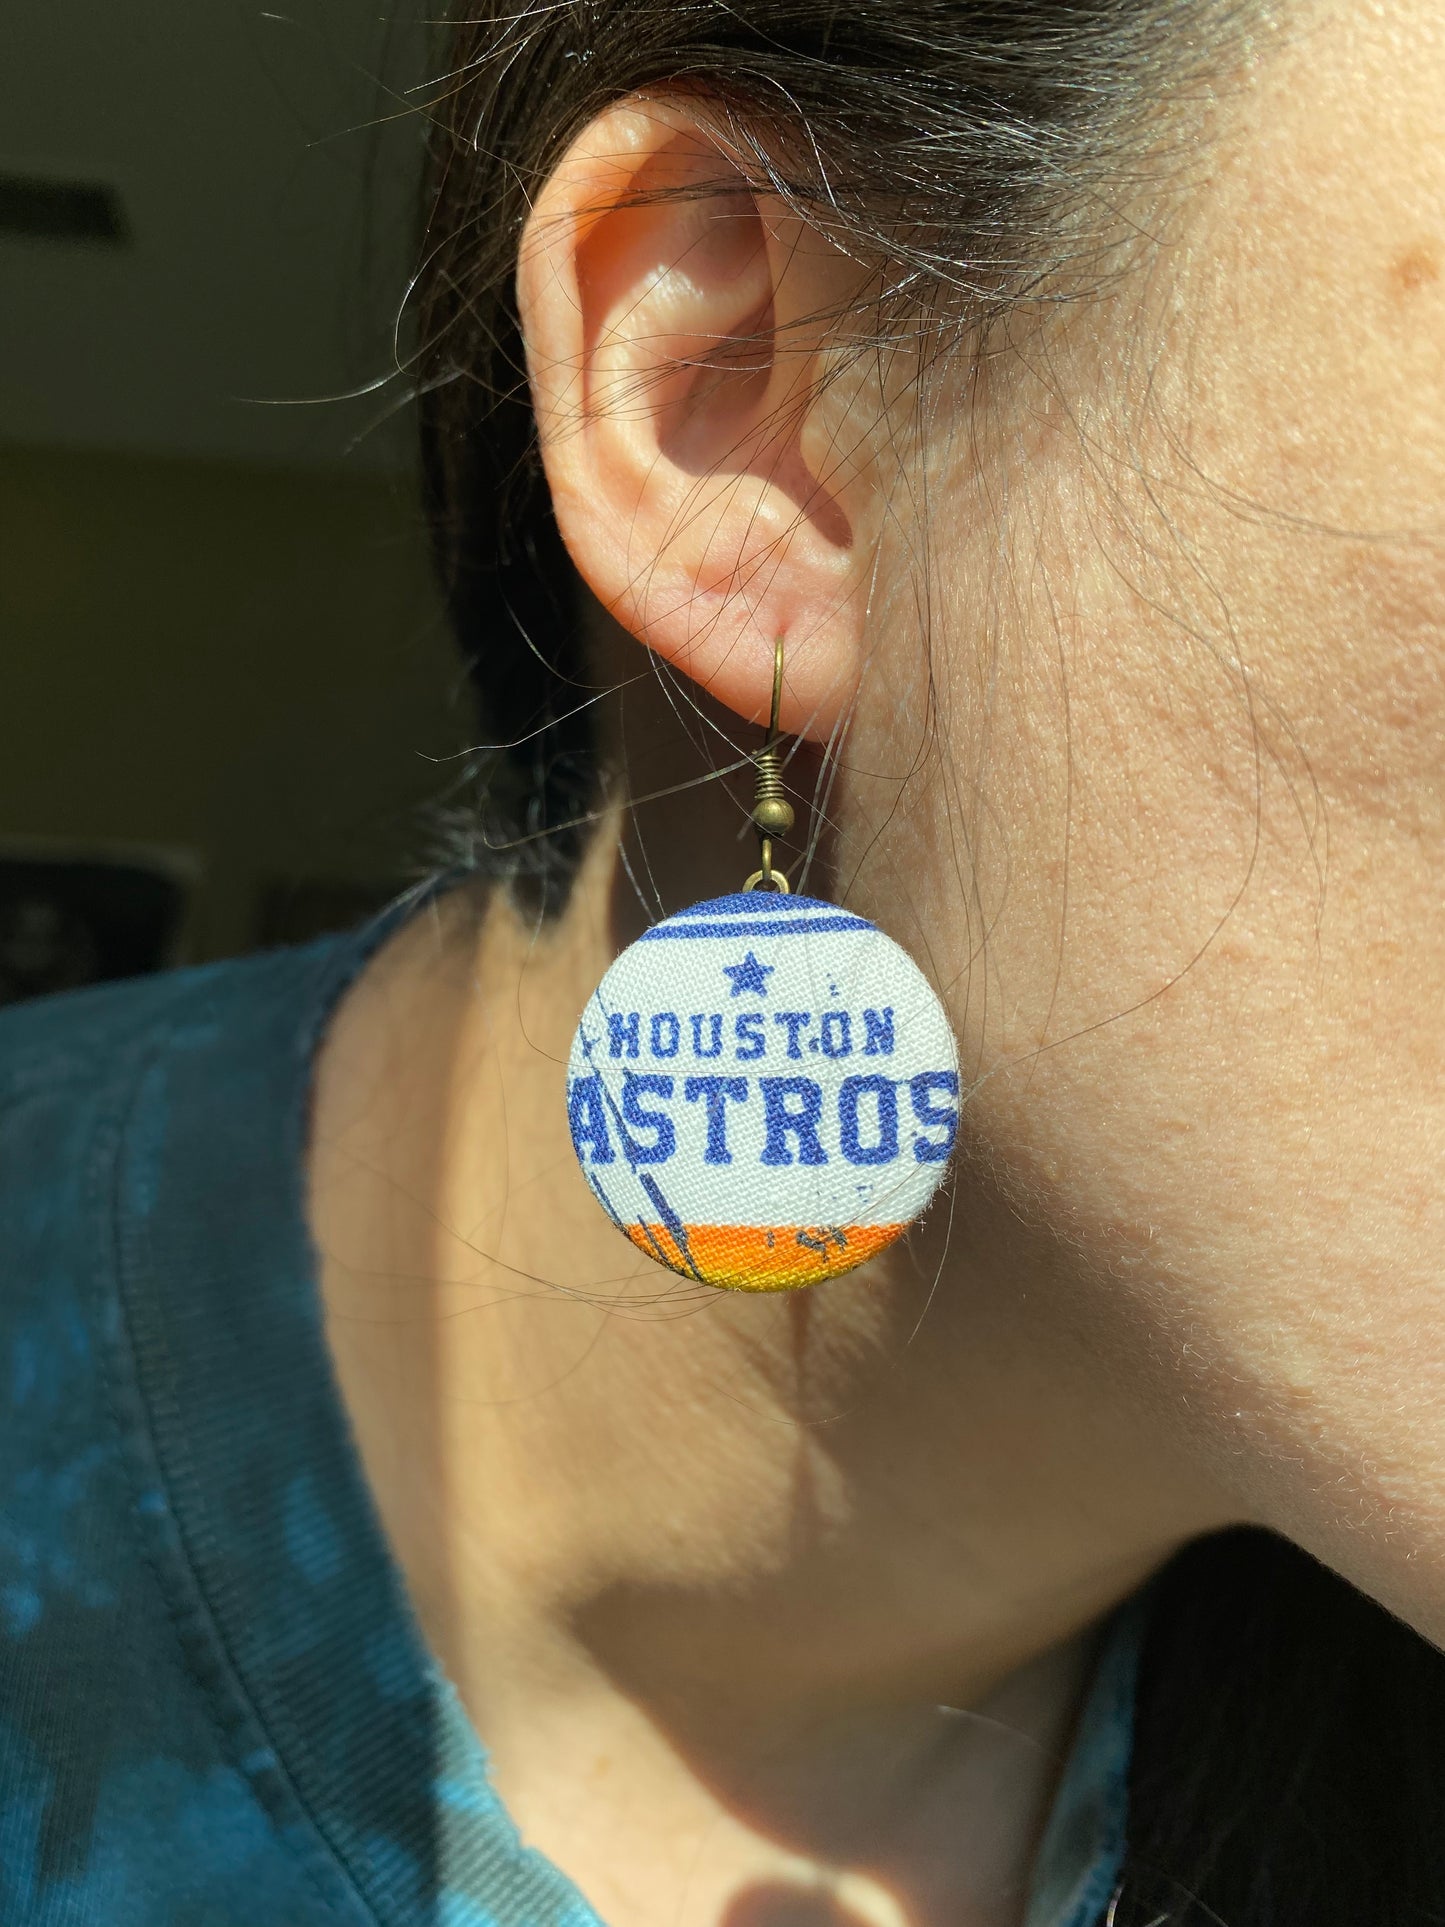 Houston Astros Dangle earrings gift